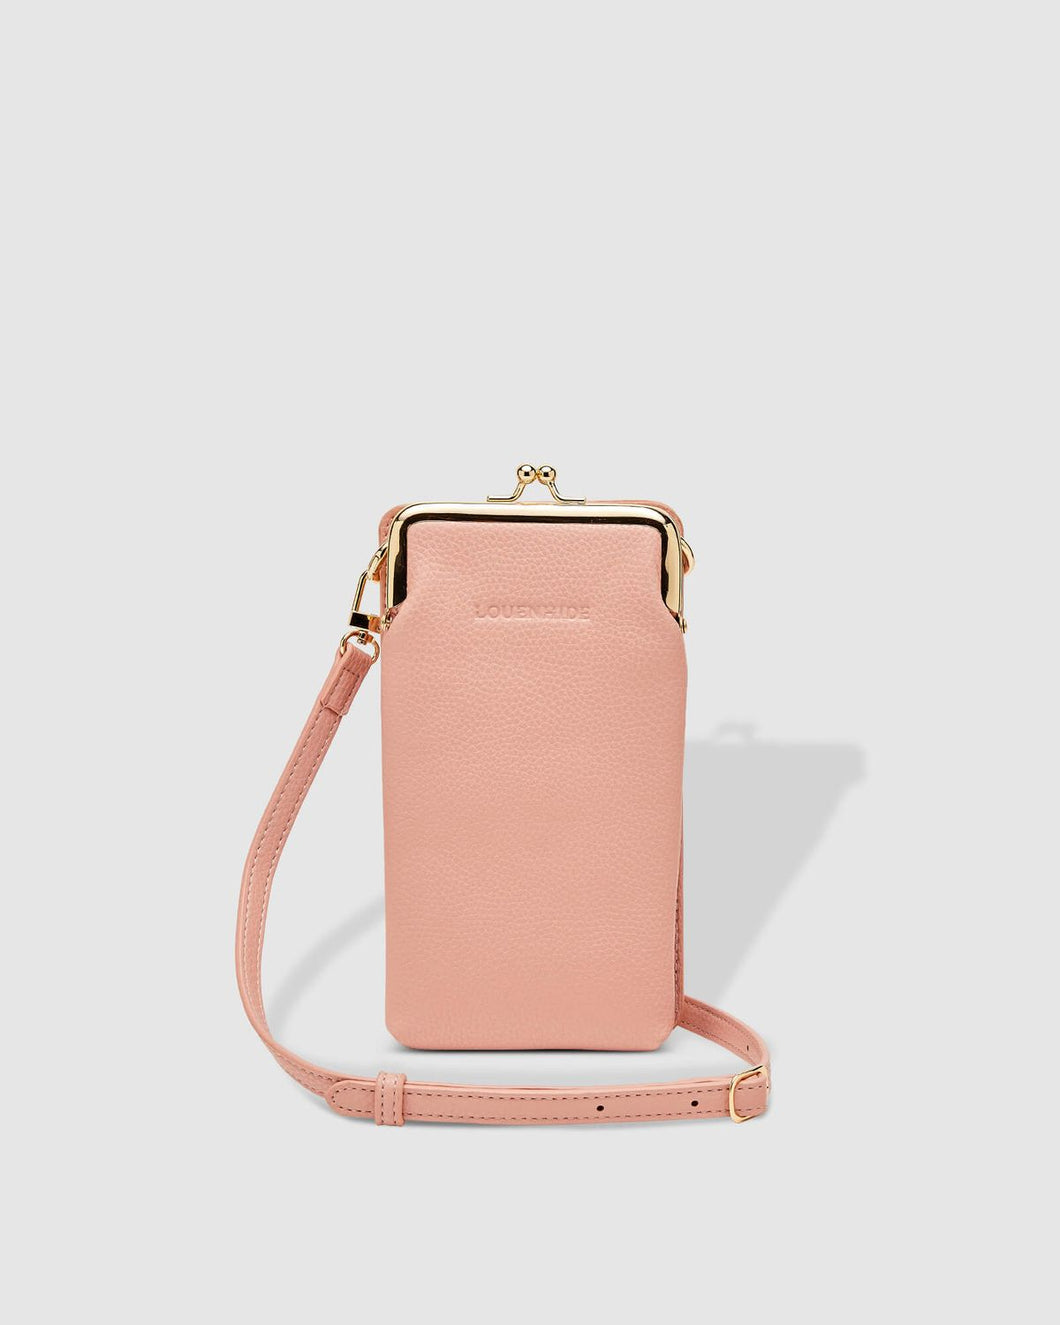 Louenhide Billie Nude Pink Crossbody Phone Bag